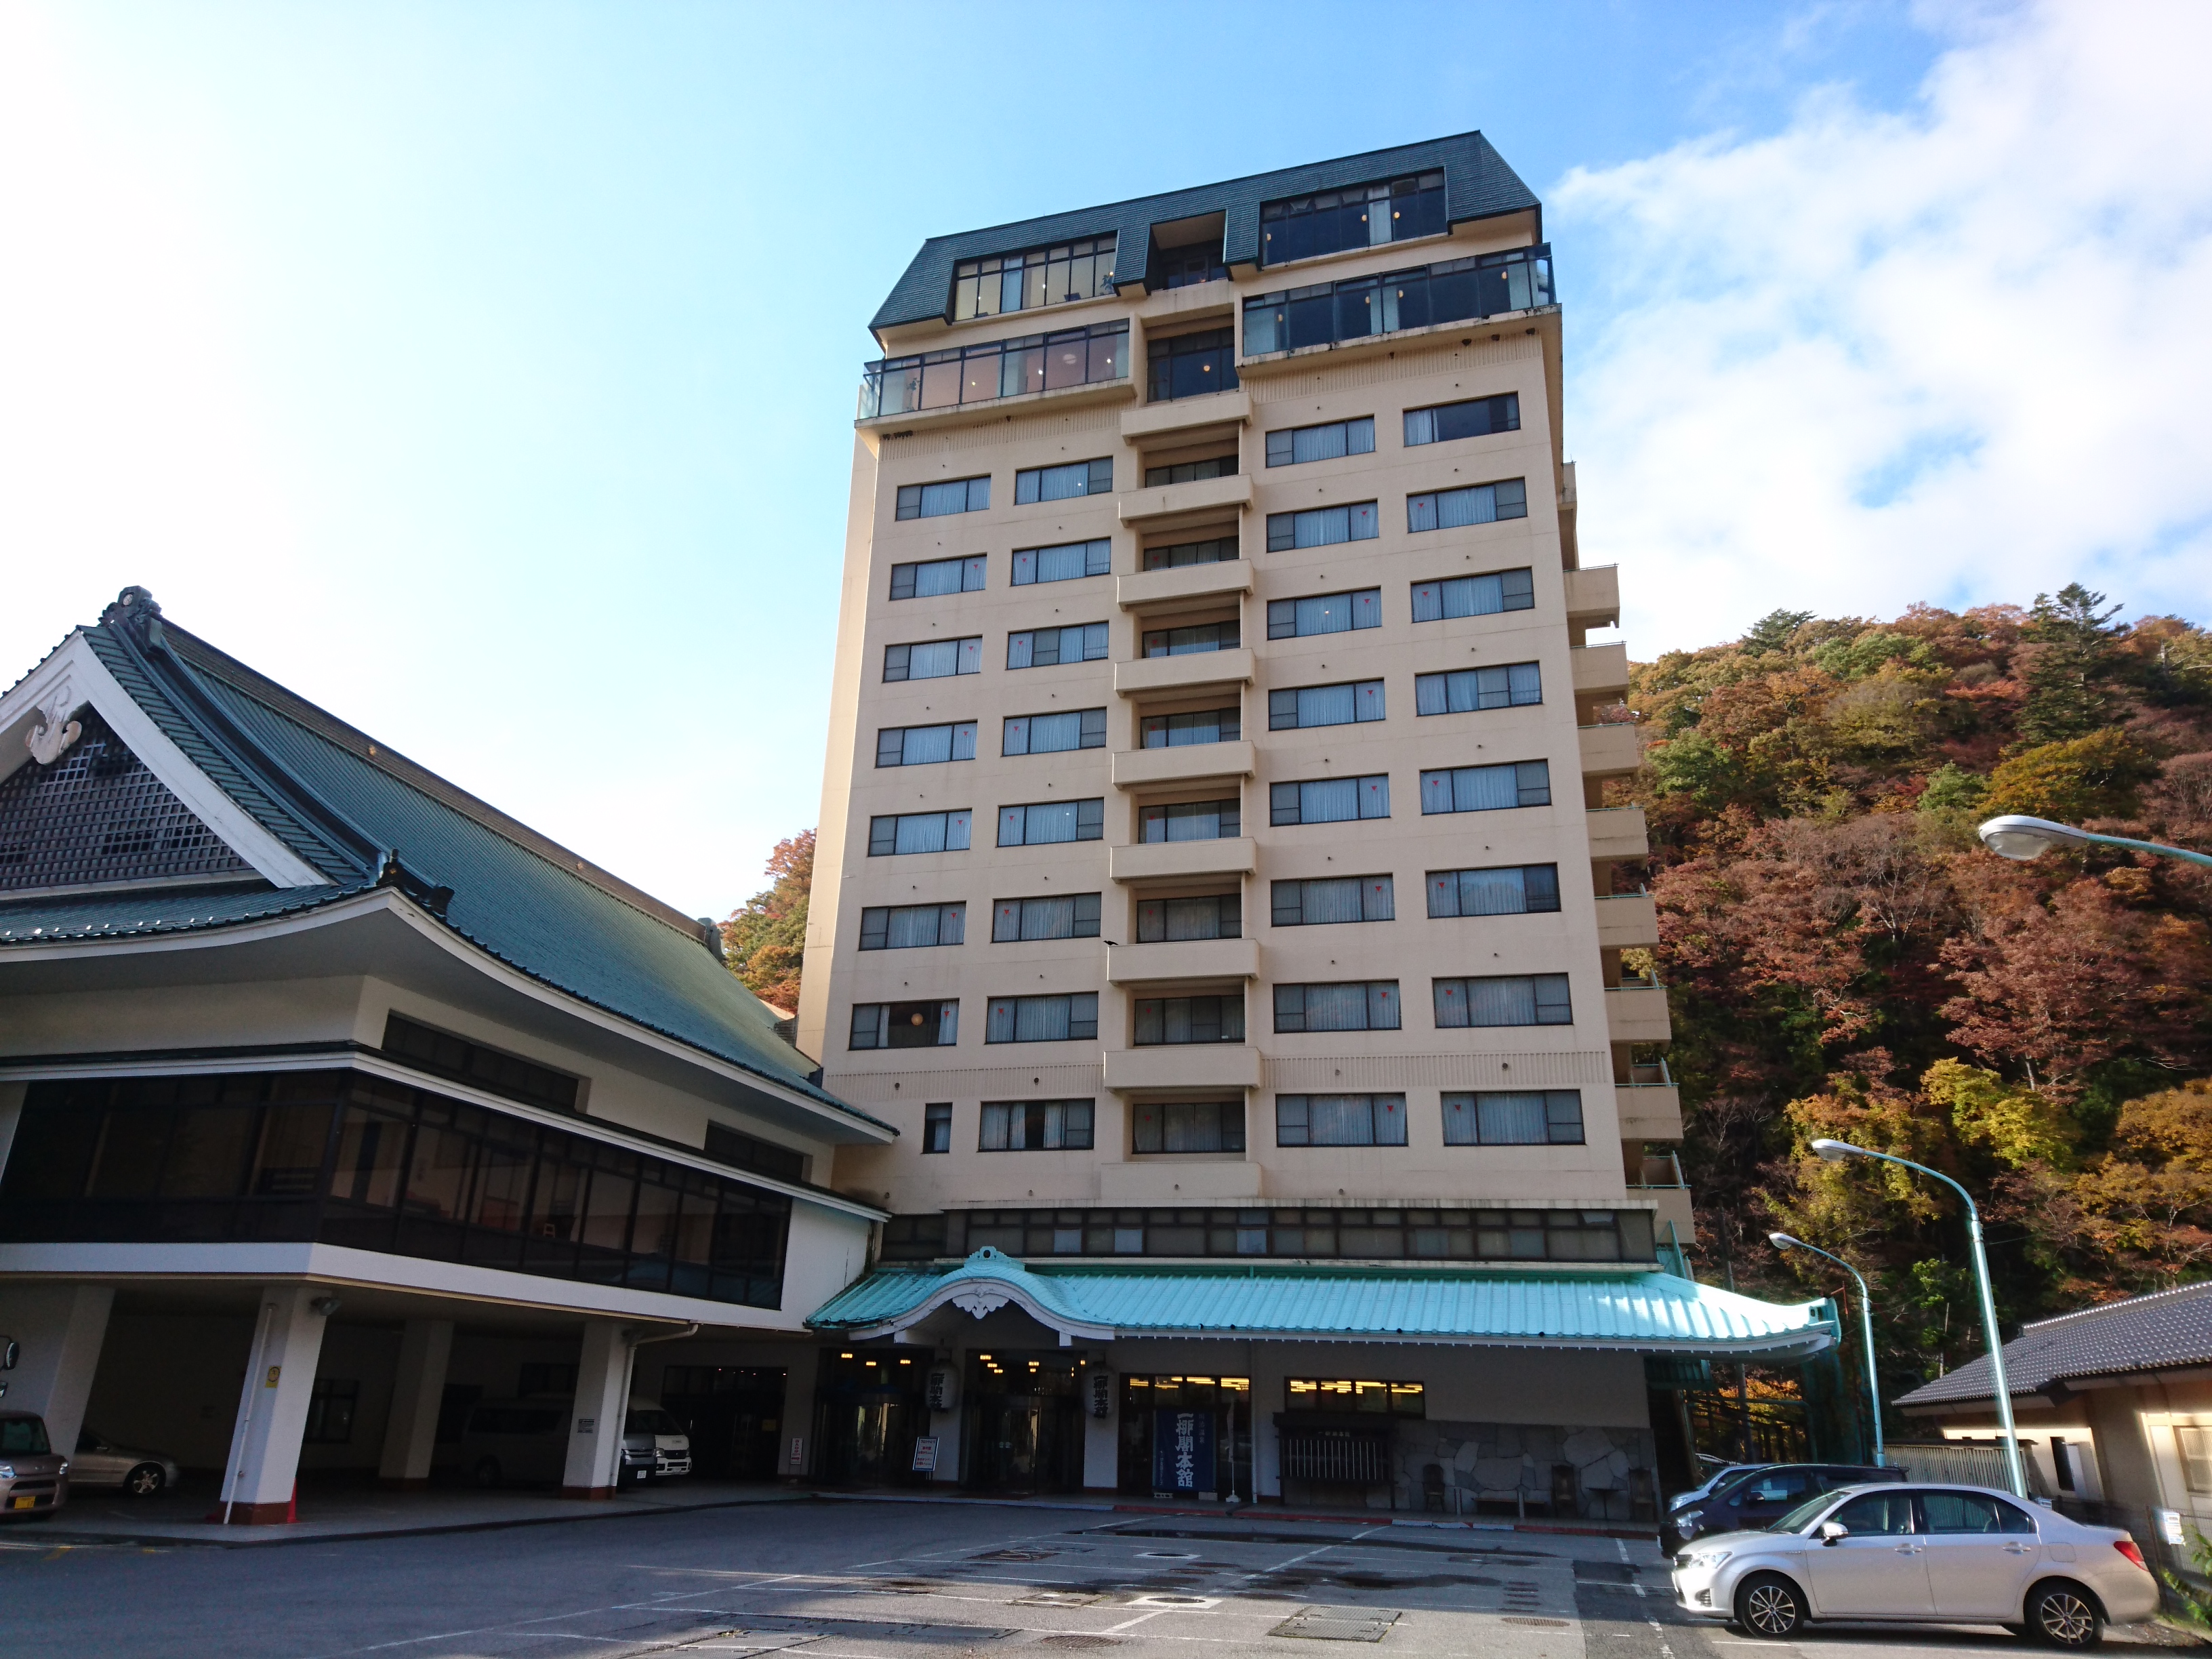 鬼怒川への家族旅行におすすめの温泉ホテル